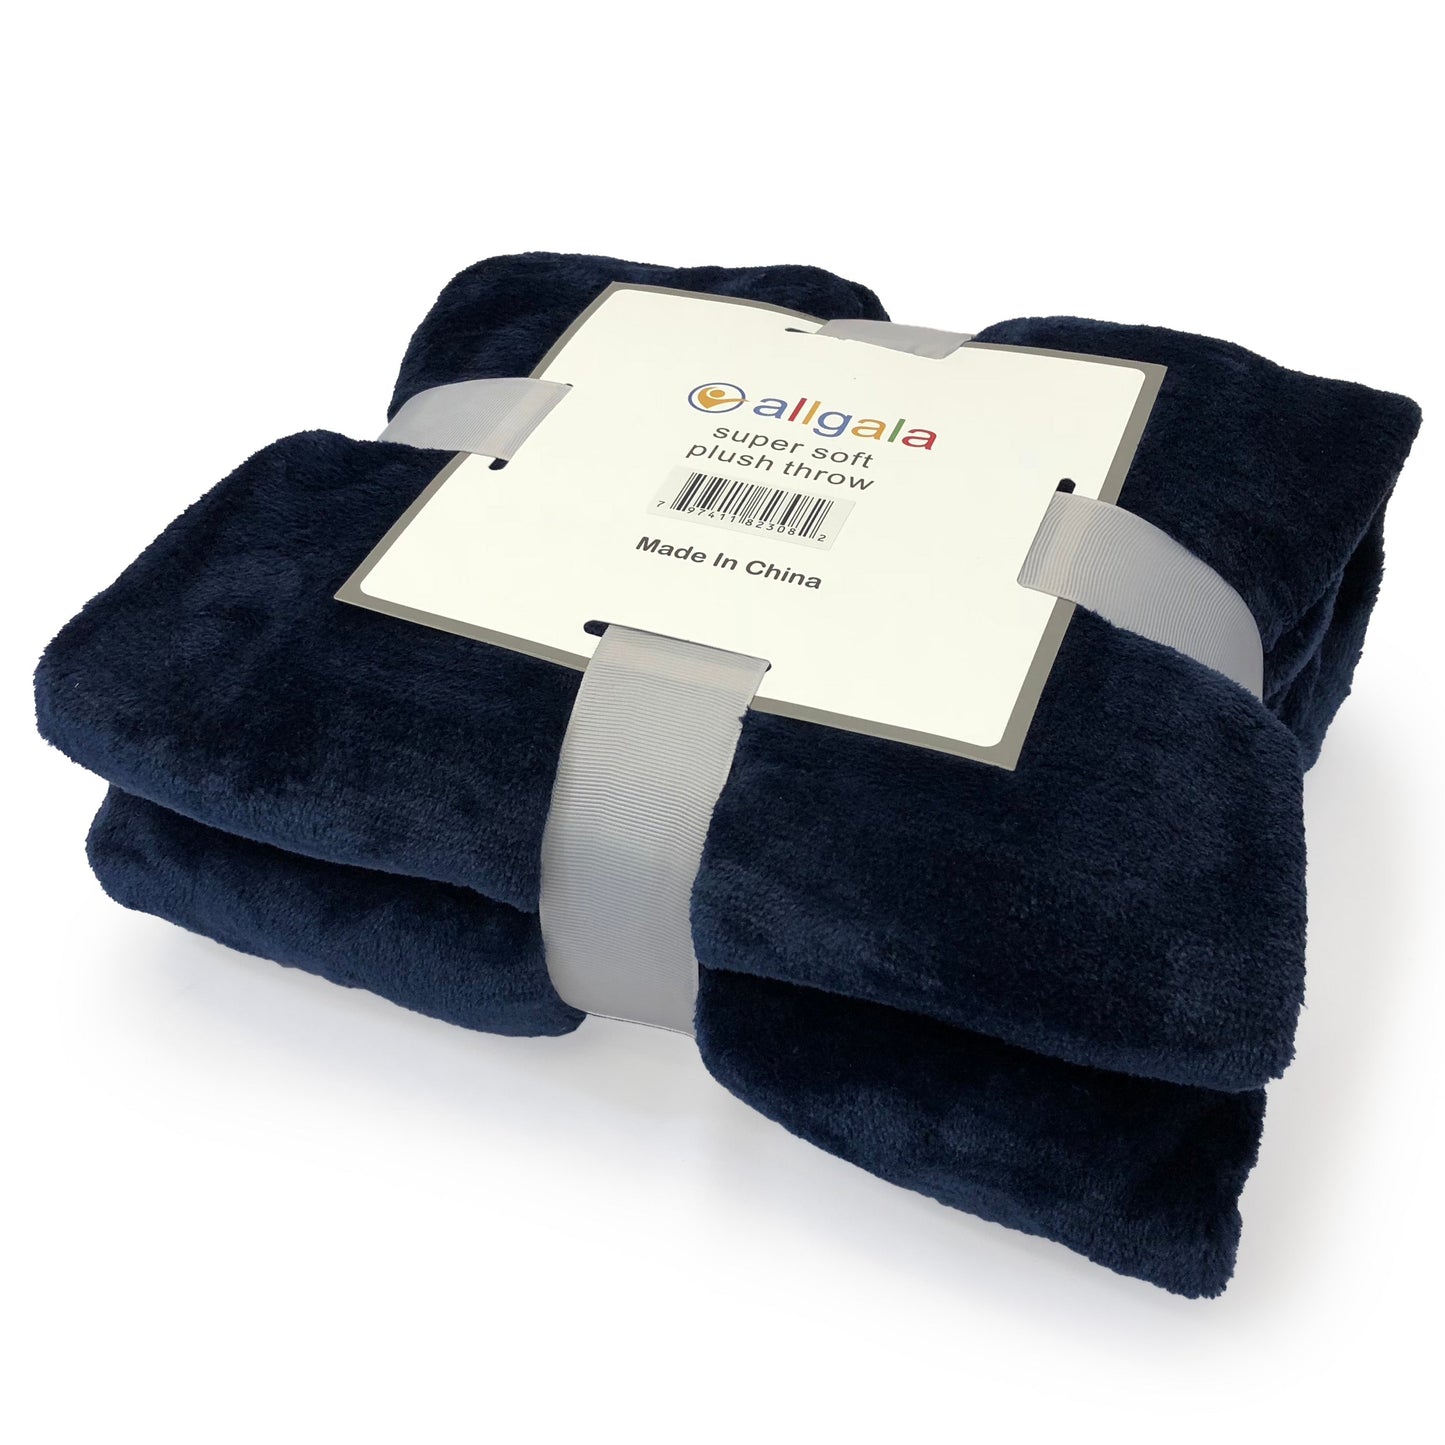 Blanket 60x90 Super Soft Flannel Plush Light Weight Throw Blanket